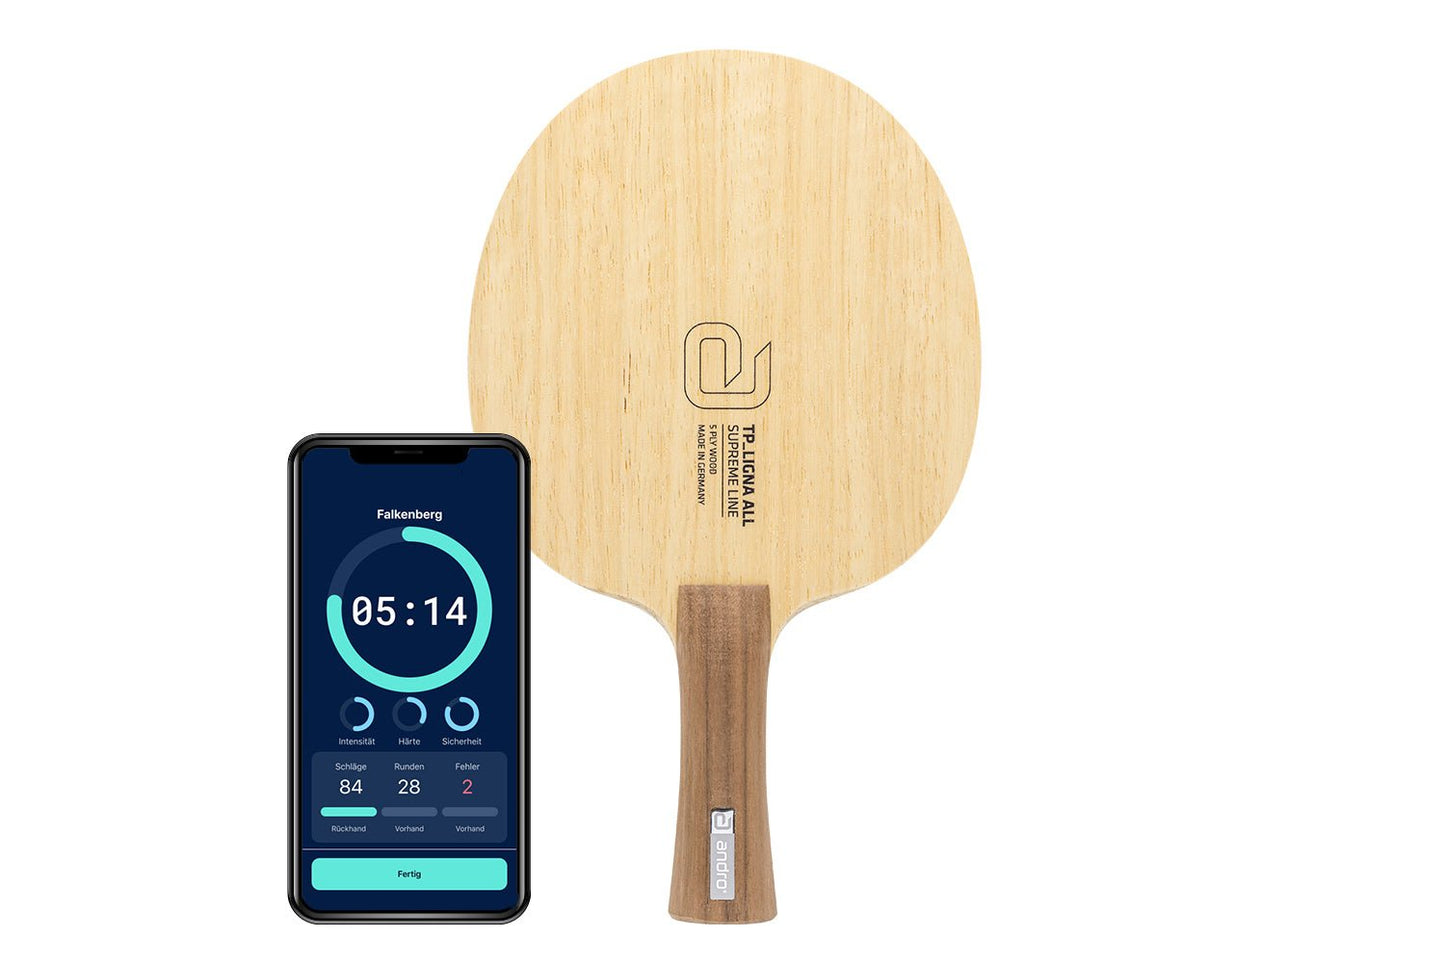 andro TP Ligna ALL Tischtennisschläger mit konkaven Griff und Smartphone zeigt Daten des Schlägers vor weißem Hintergrund